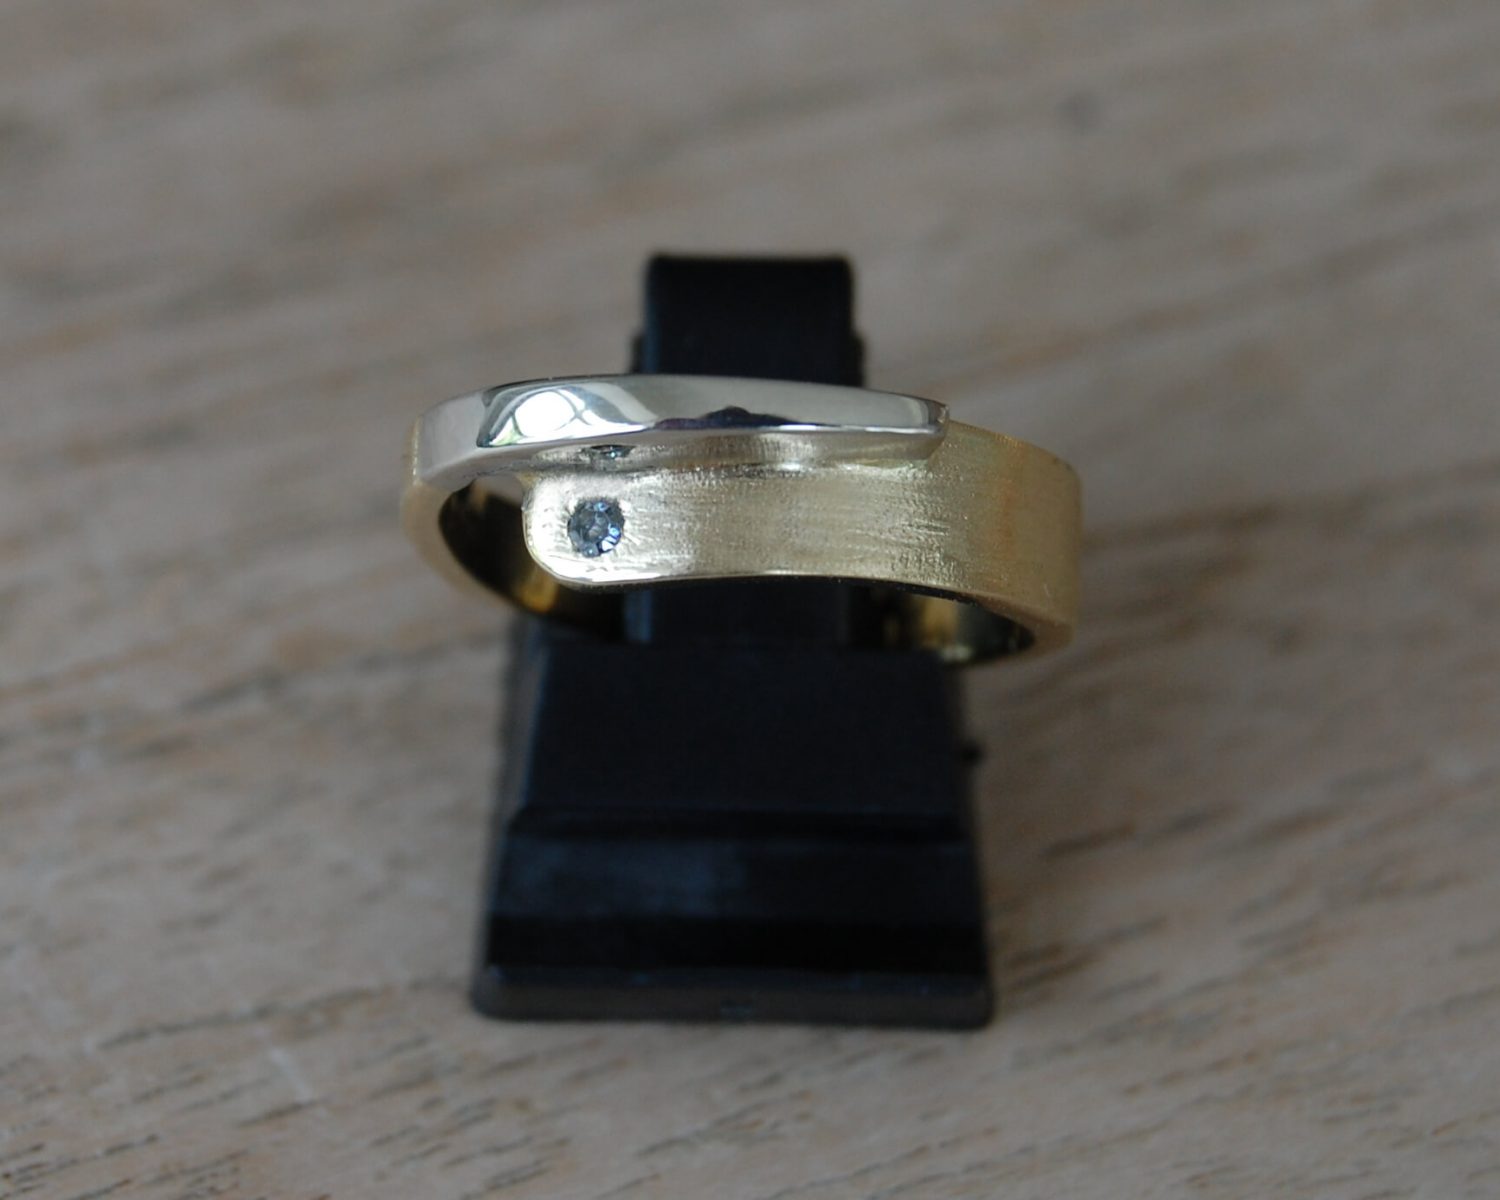 Ring gemaakt uit aangeleverd geelgoud en toegevoegd witgoud - inclusief diamant van 0,02 karaat. Aan de binnenzijde van de ring is een bakje gemaakt, gevuld met wat as.